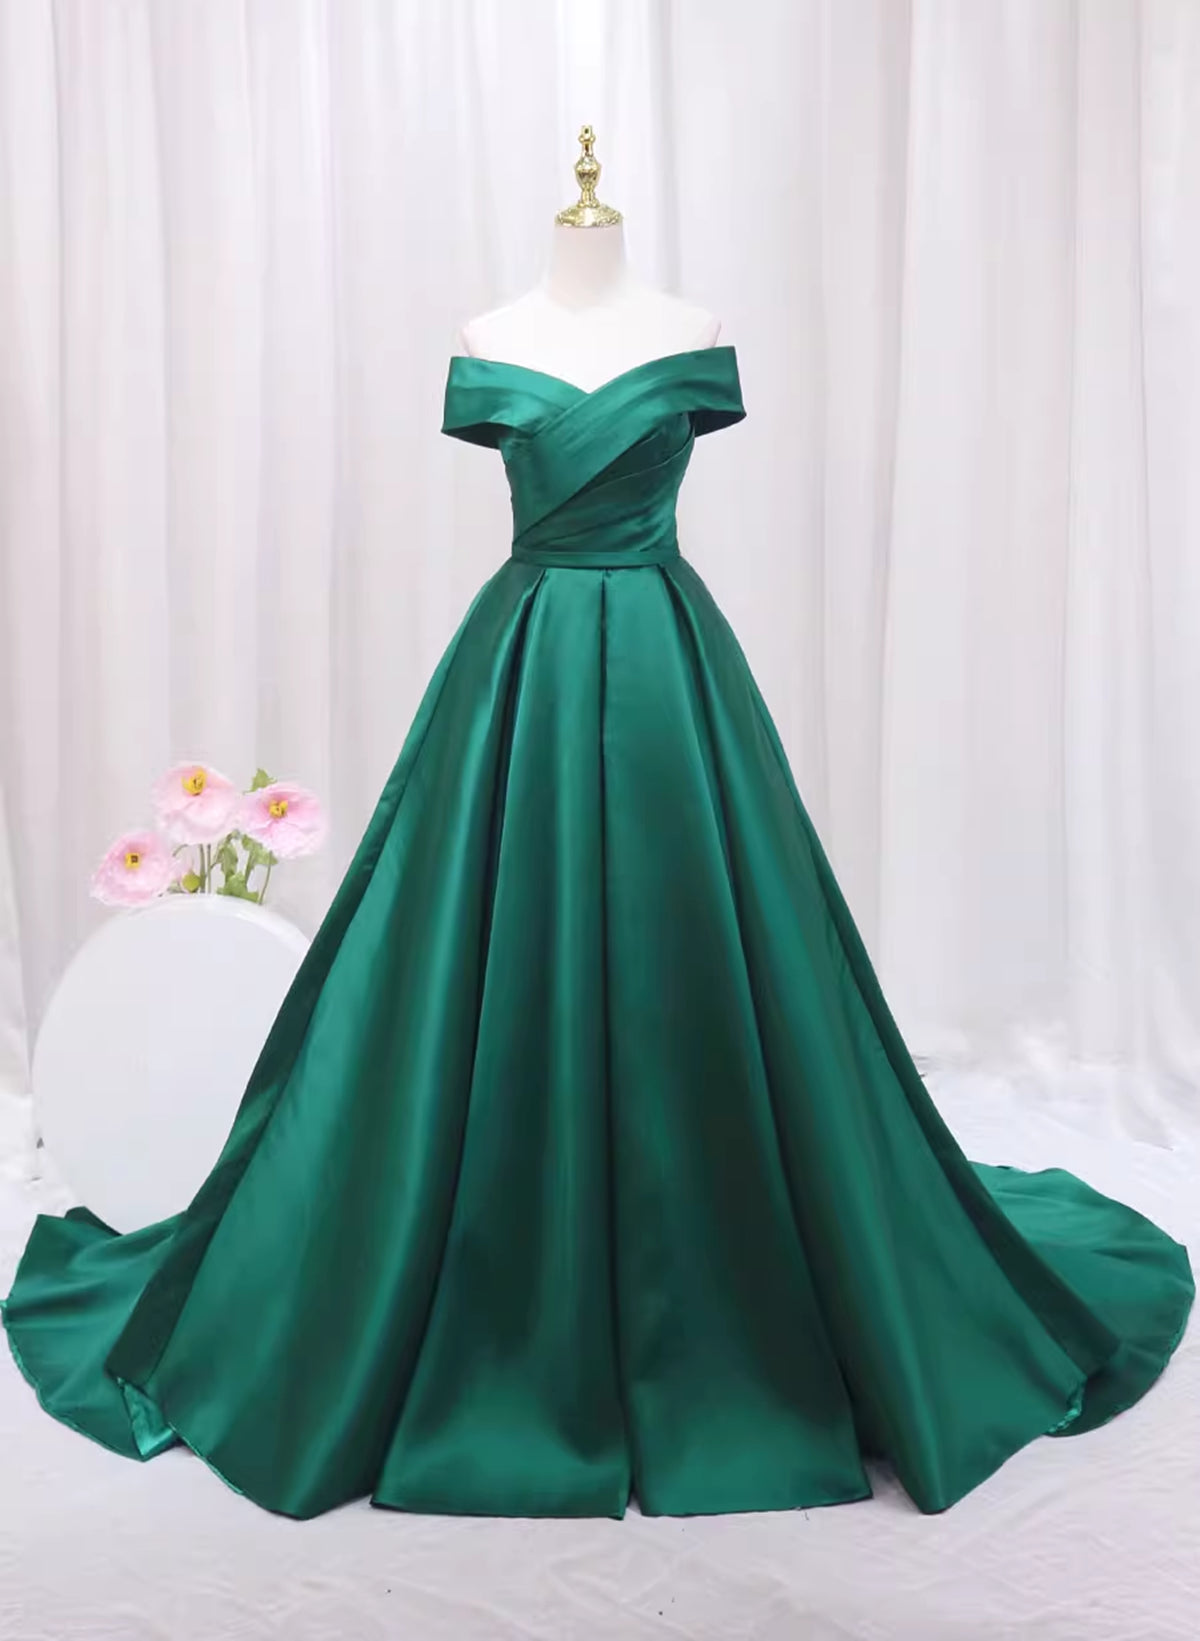 Bridesmaids Dresses Fall, A-line Green Satin Sweetheart Formal Dress, Green Long Evening Dress Prom Dress